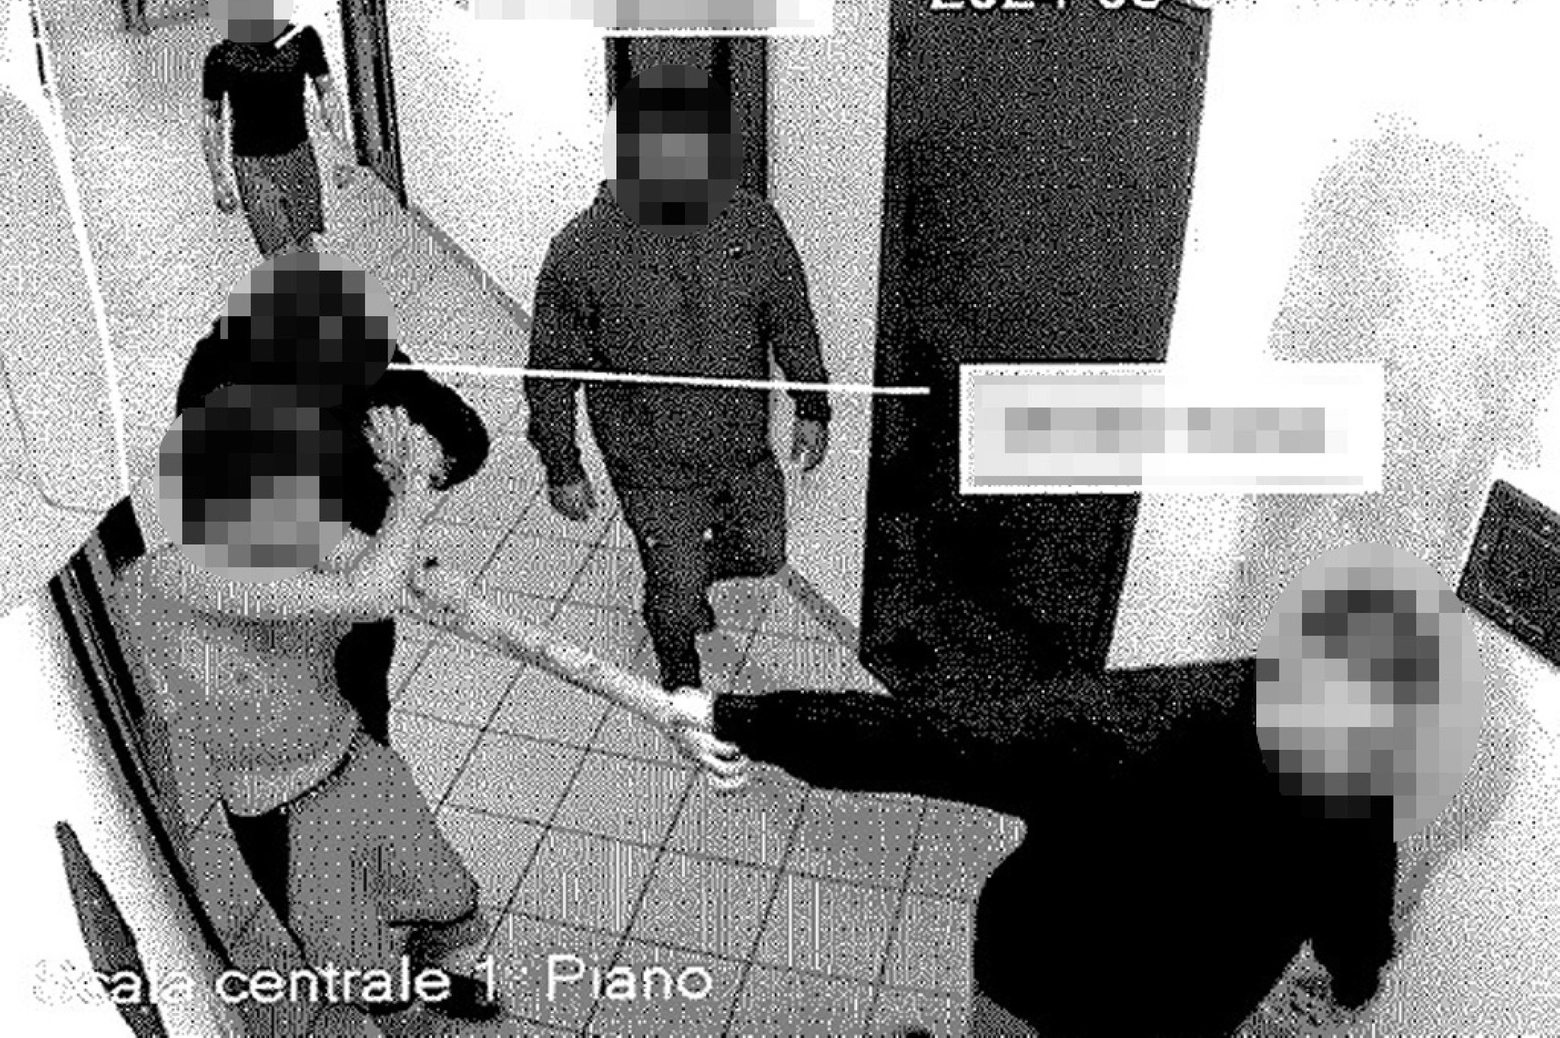 Fotogramma di una delle aggressioni registrate dalle telecamere: il ragazzo tirato per un braccio